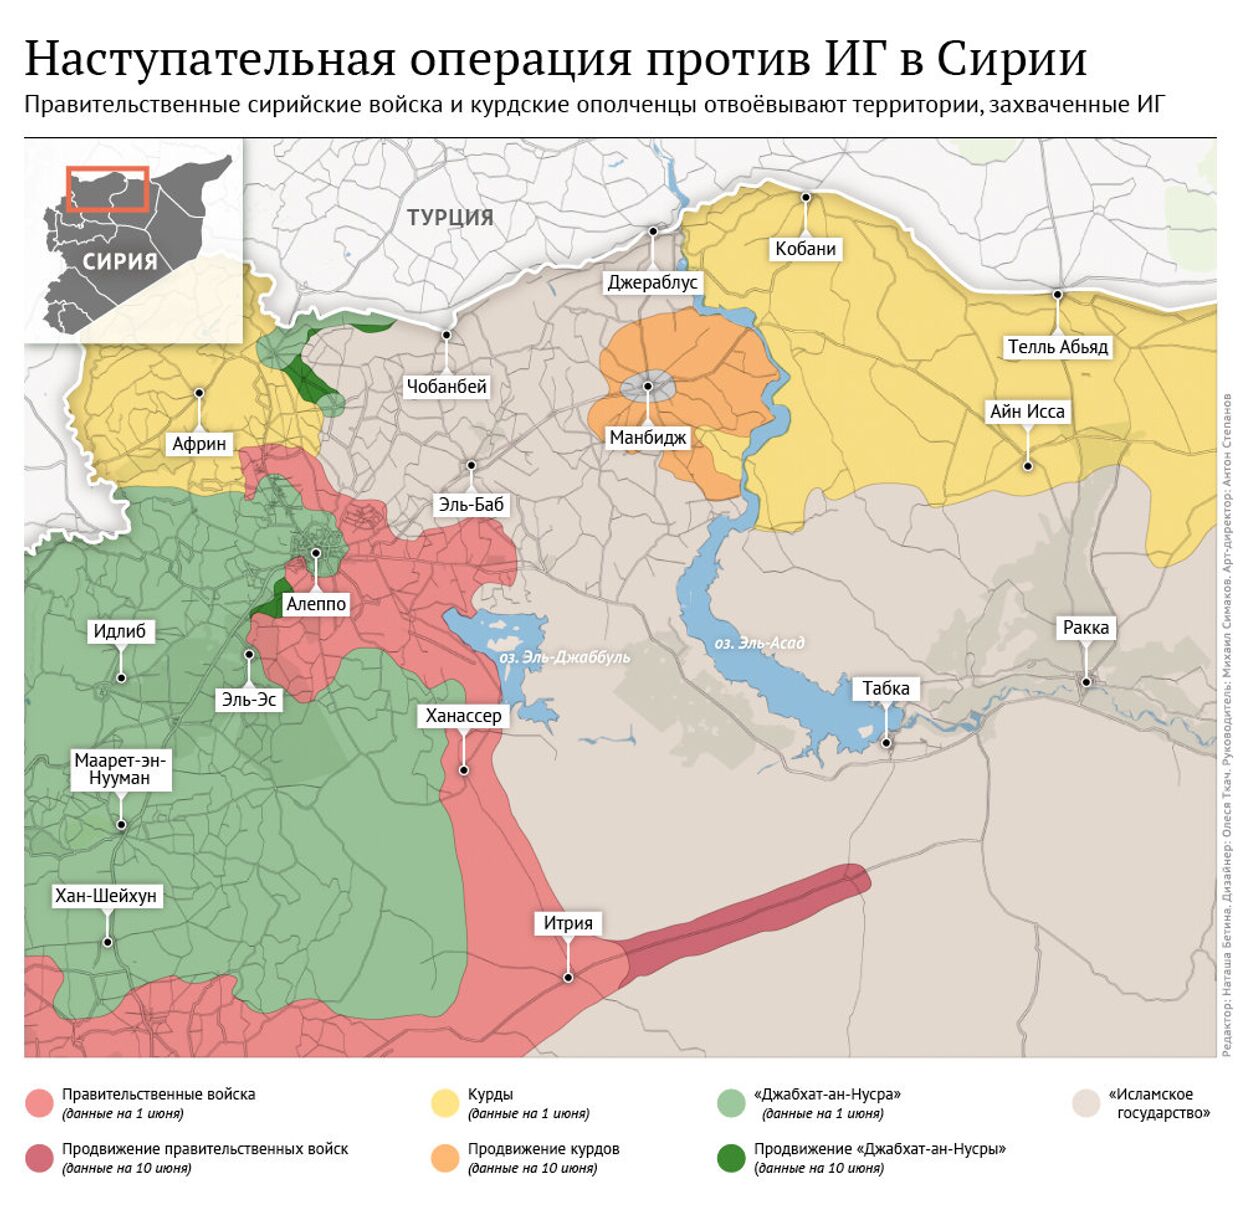 Карта продвижения правительственных войск Сирии и курдского ополчения